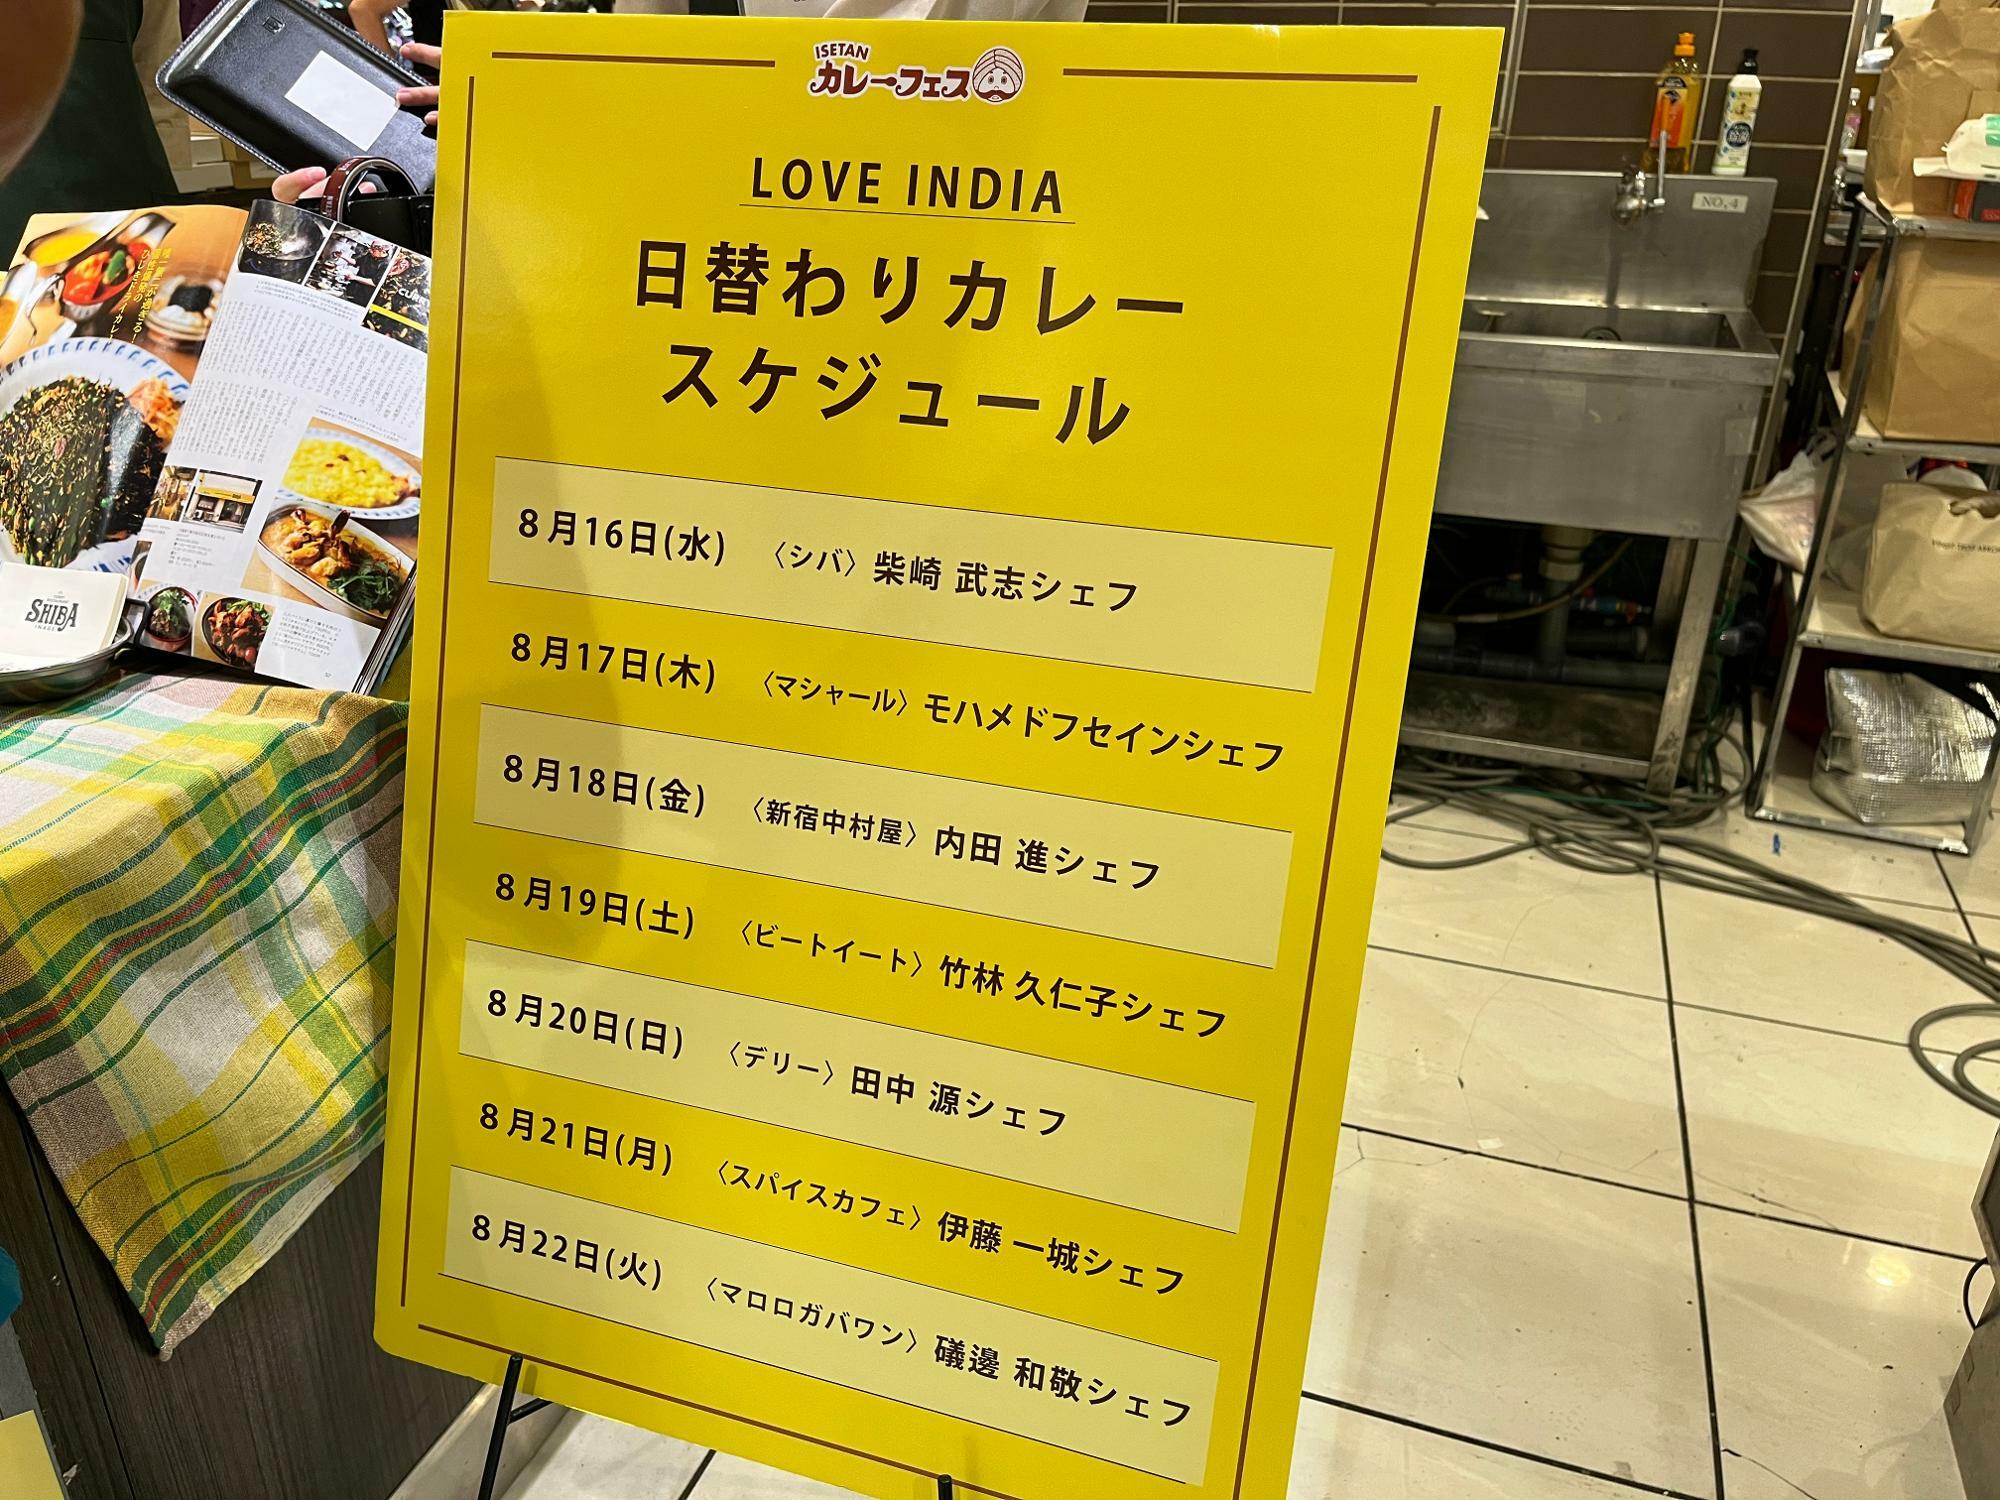 LOVE INDIA 日替わりスケジュール